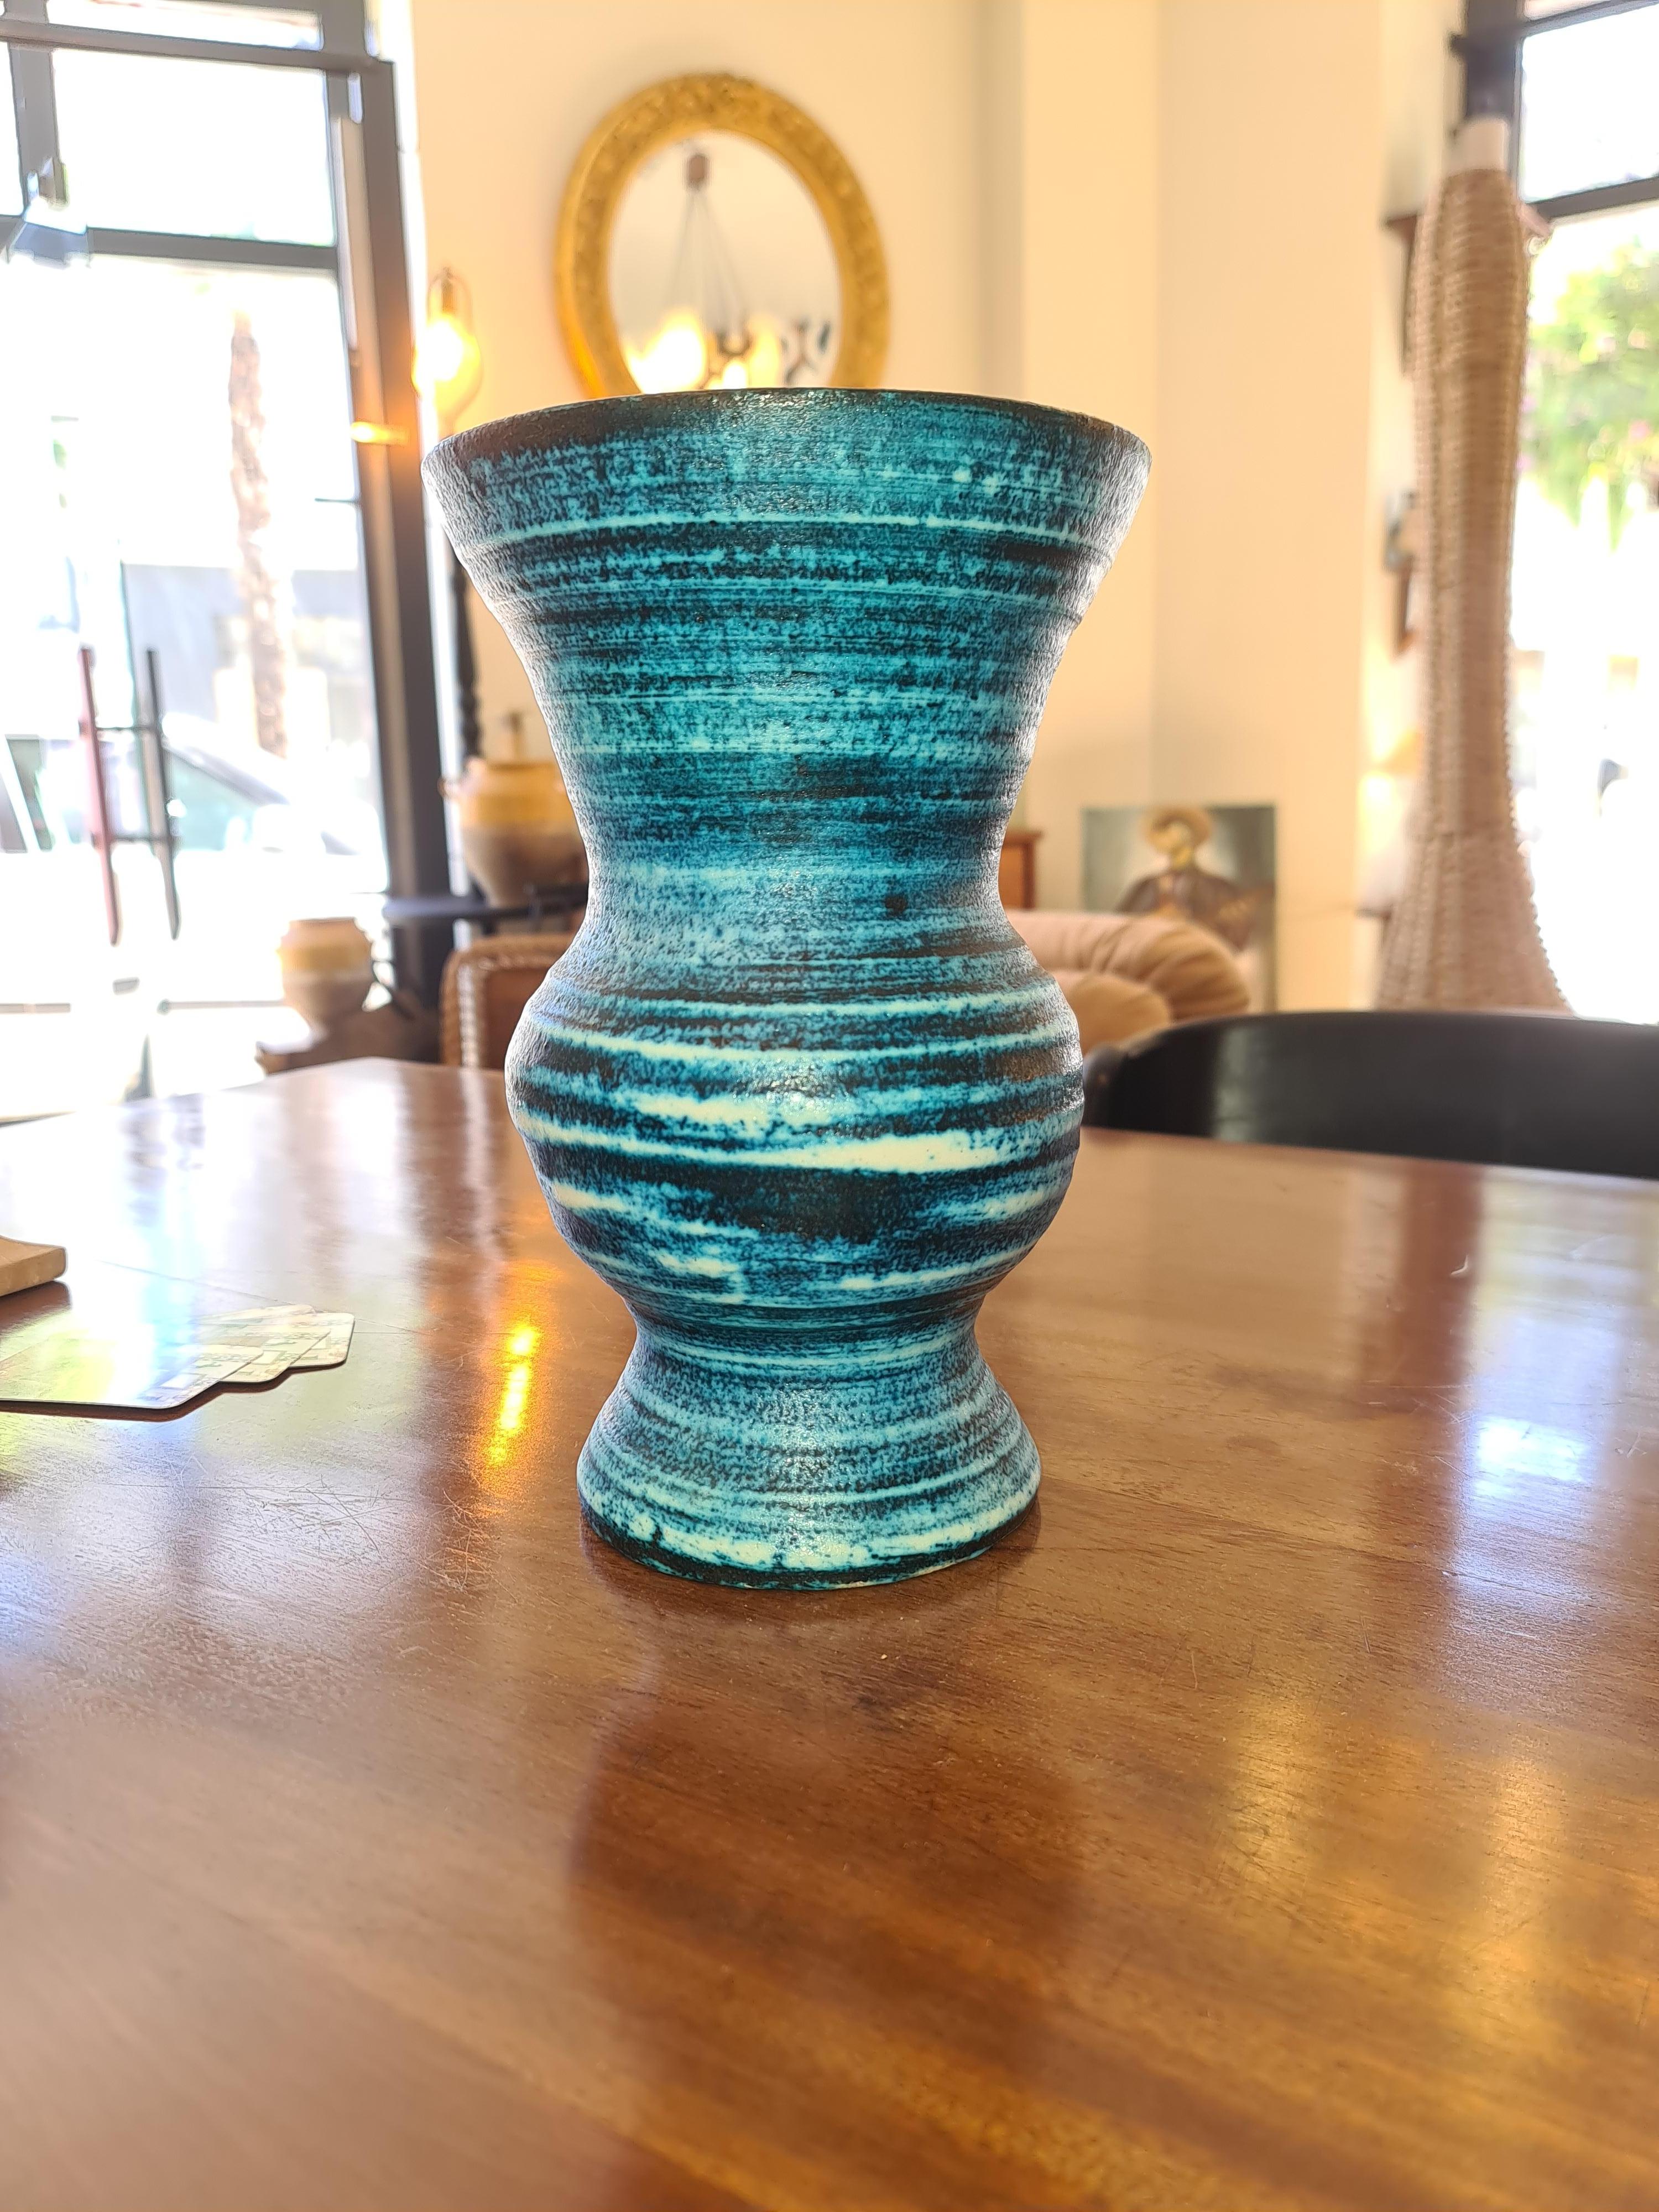 Magnifique vase à panse de la série Gauloise d'Accolay reconnaissable à son inimitable nuance de bleu, en excellent état, La signature incisée sous le vase.
Cette série, appelée 